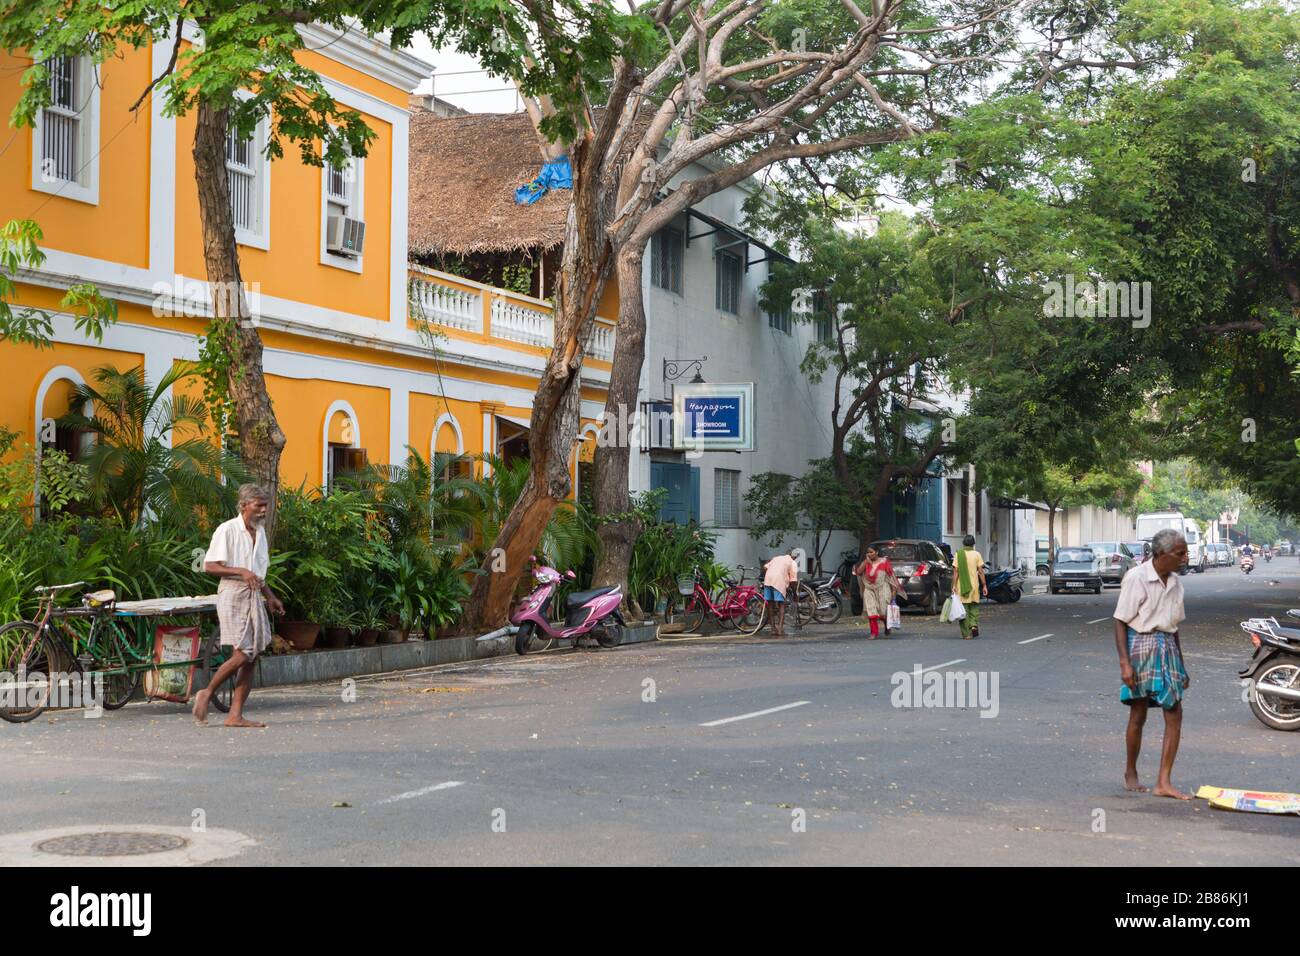 Pondichéry, Inde - 7 novembre 2019: Rue avec maisons colorées à Pondichéry en Inde Banque D'Images